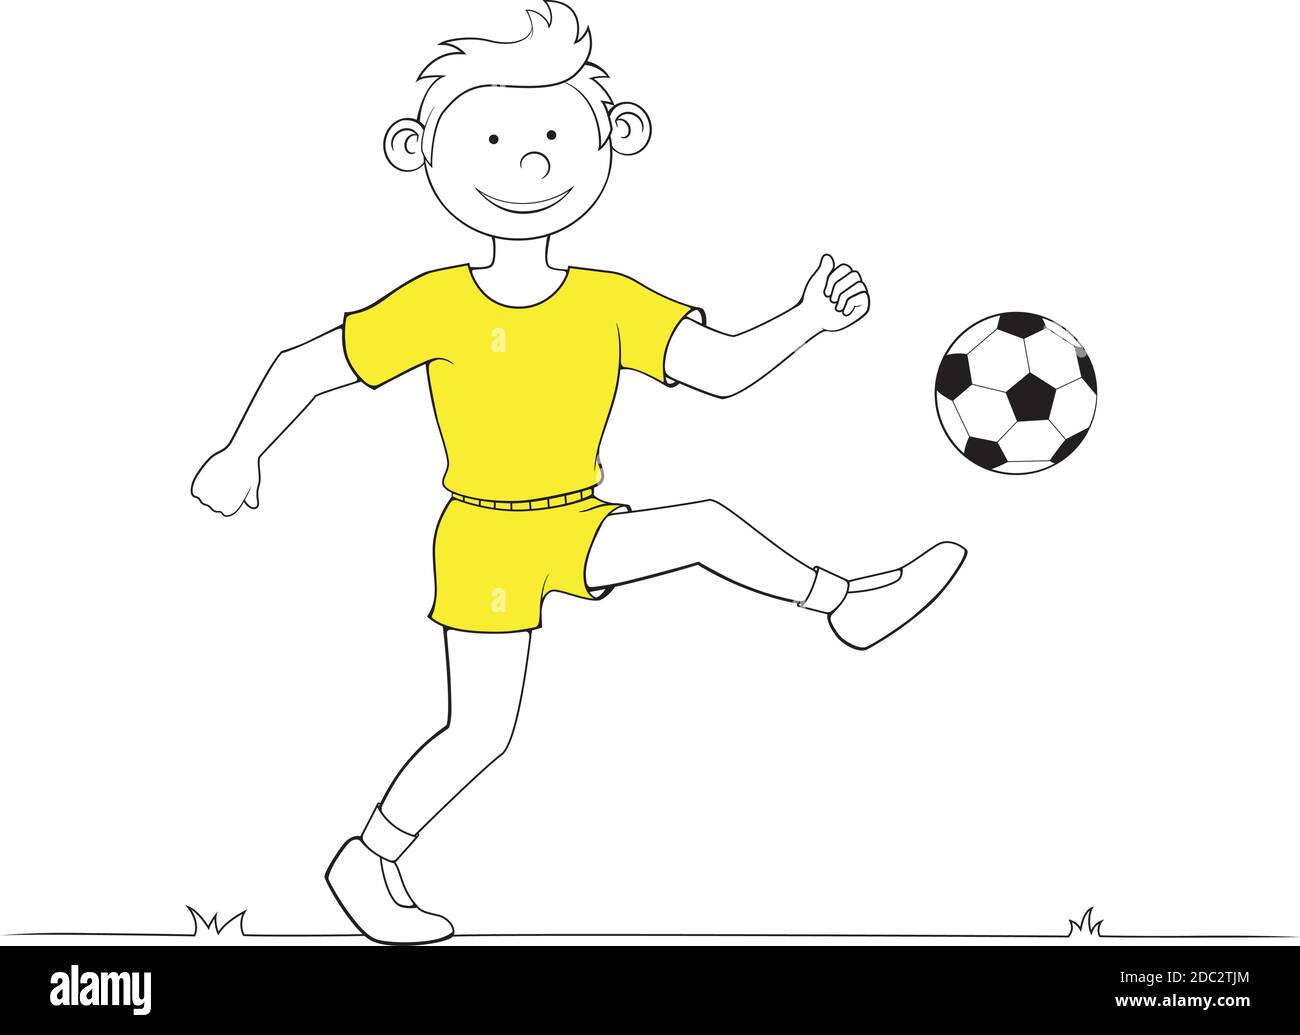 Junge spielt Fußball. Vektorgrafik auf weißem Hintergrund. Stock Vektor